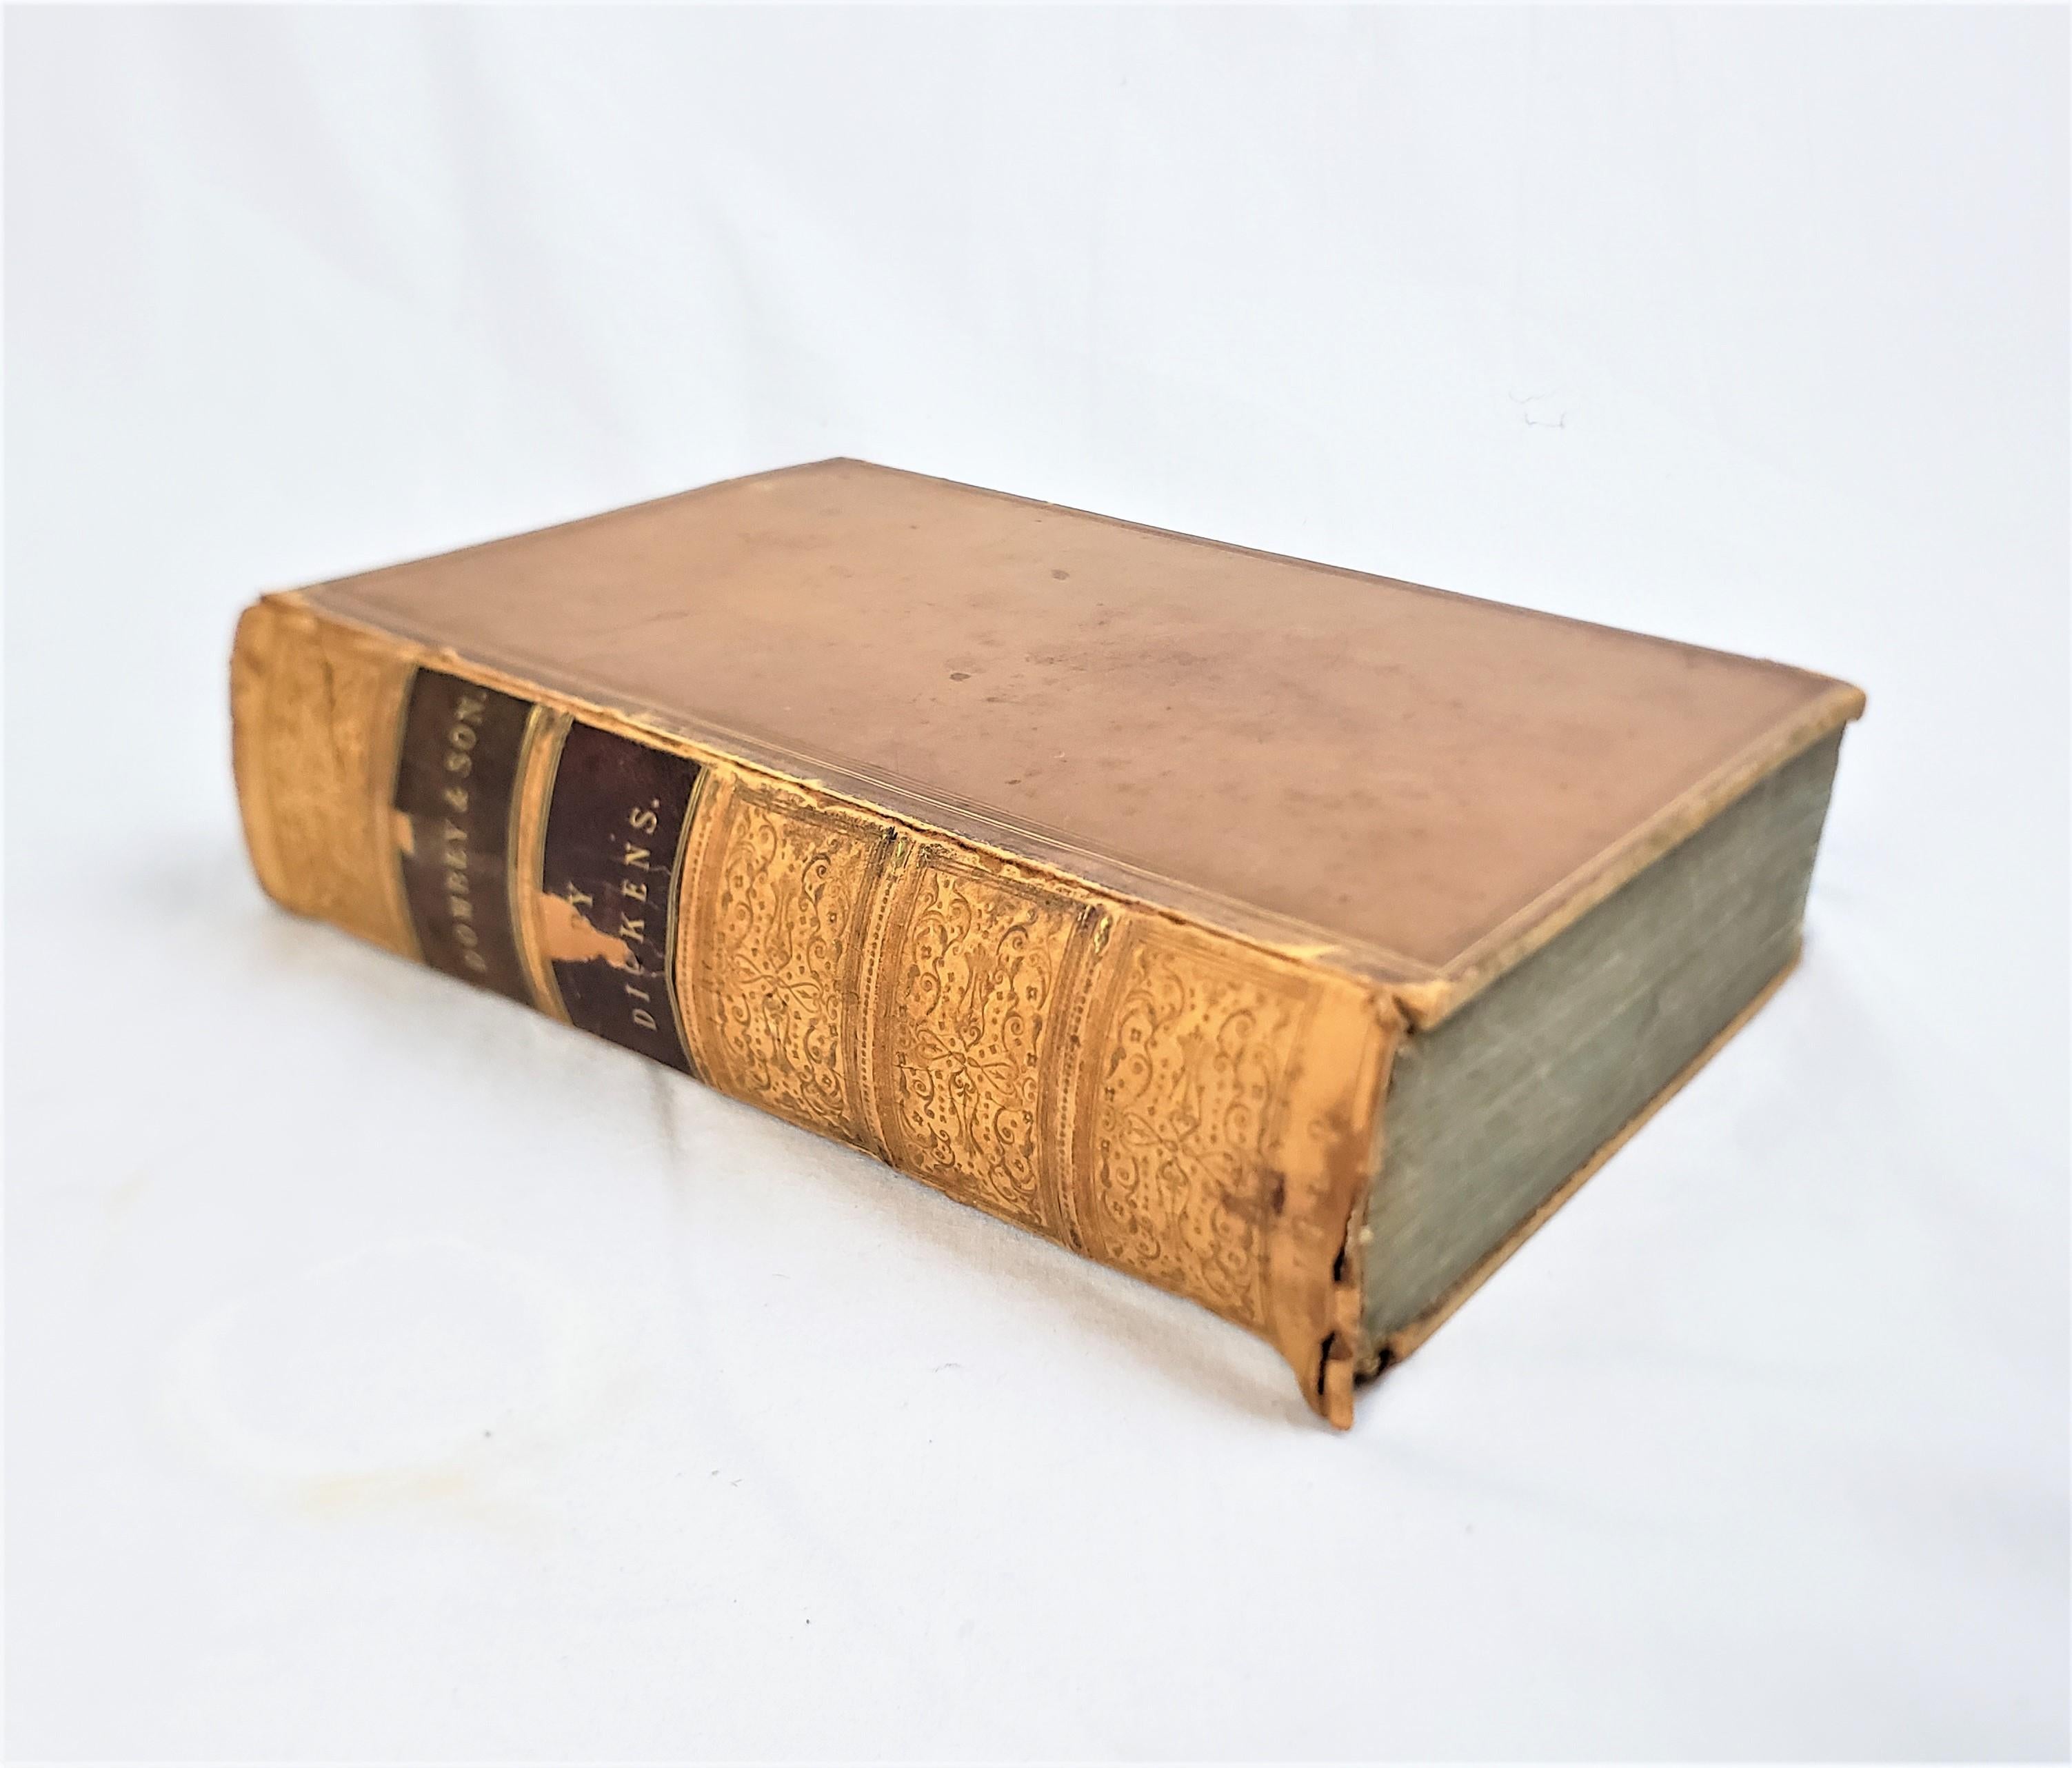 Diese antike 1. Ausgabe Buch mit dem Titel Dombey & Son wurde von Charles Dickens verfasst und von Bradbury & Evans, Whitefriars von England im Jahr 1848 in der Zeit viktorianischen Stil mit Radierungen von Hablot Knight Browne 